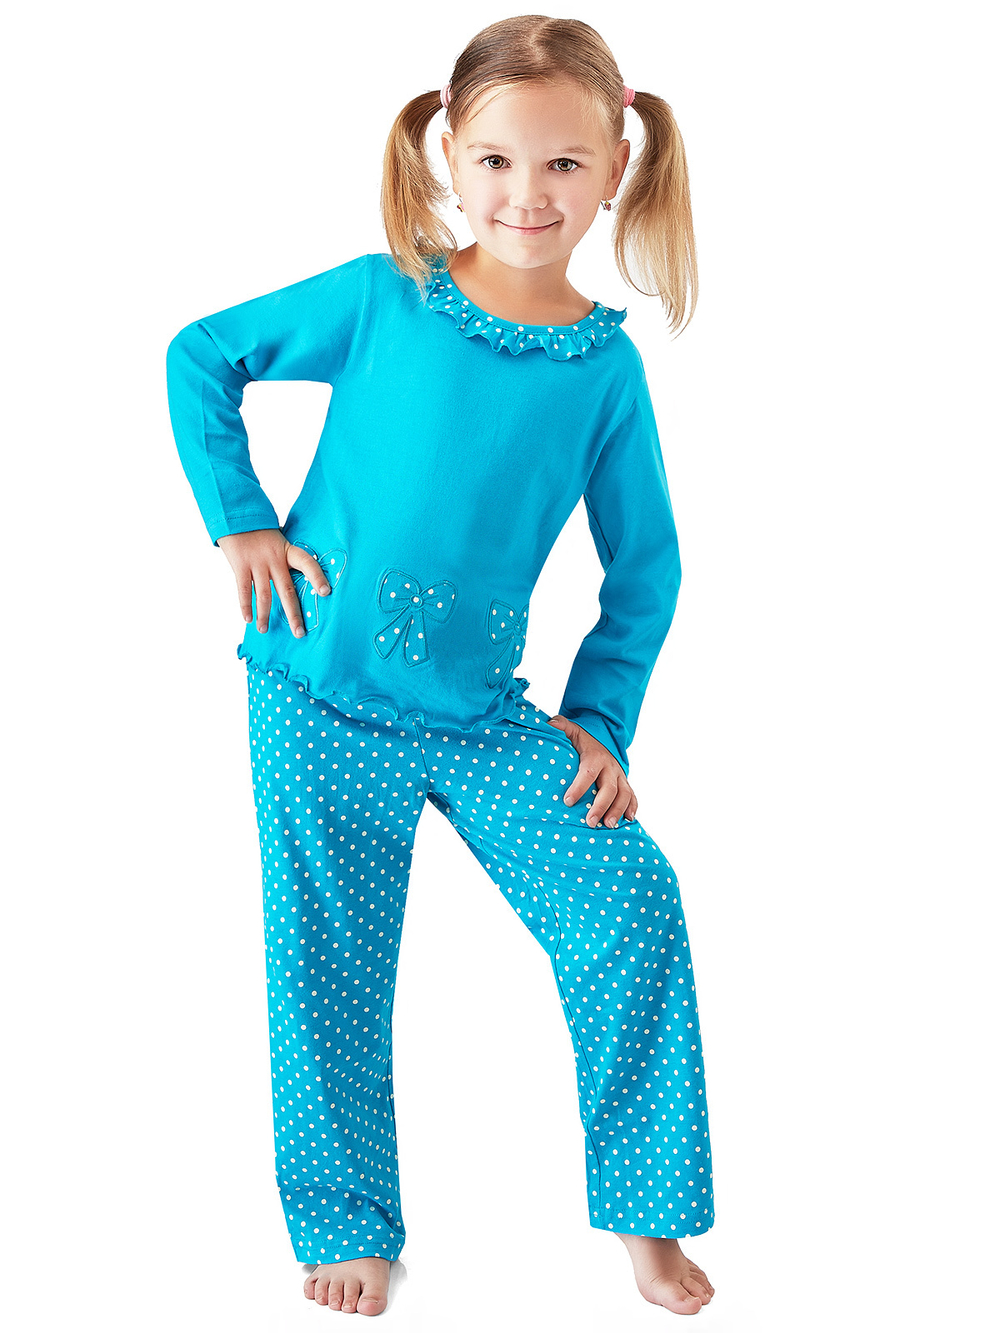 GPG-62  пижама для девочки